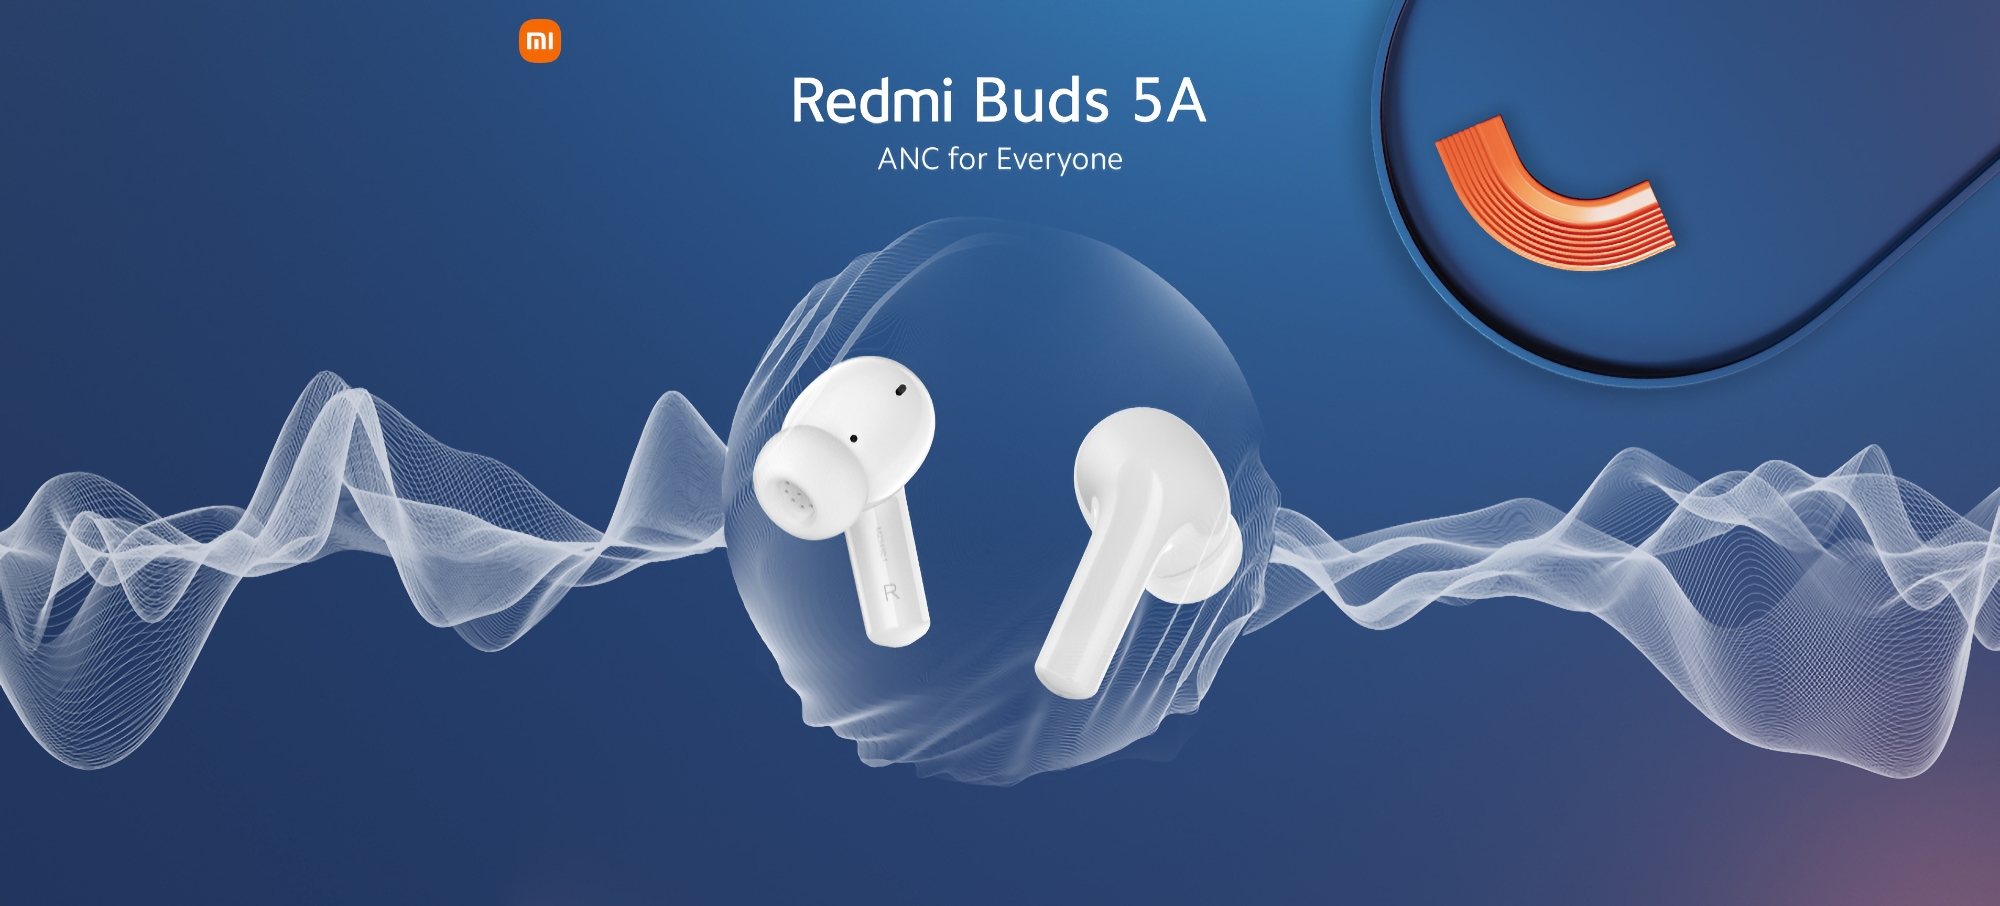 Xiaomi afslører de billige Redmi Buds 5A-hovedtelefoner med ANC og Google Fast Pair-funktion den 23. april